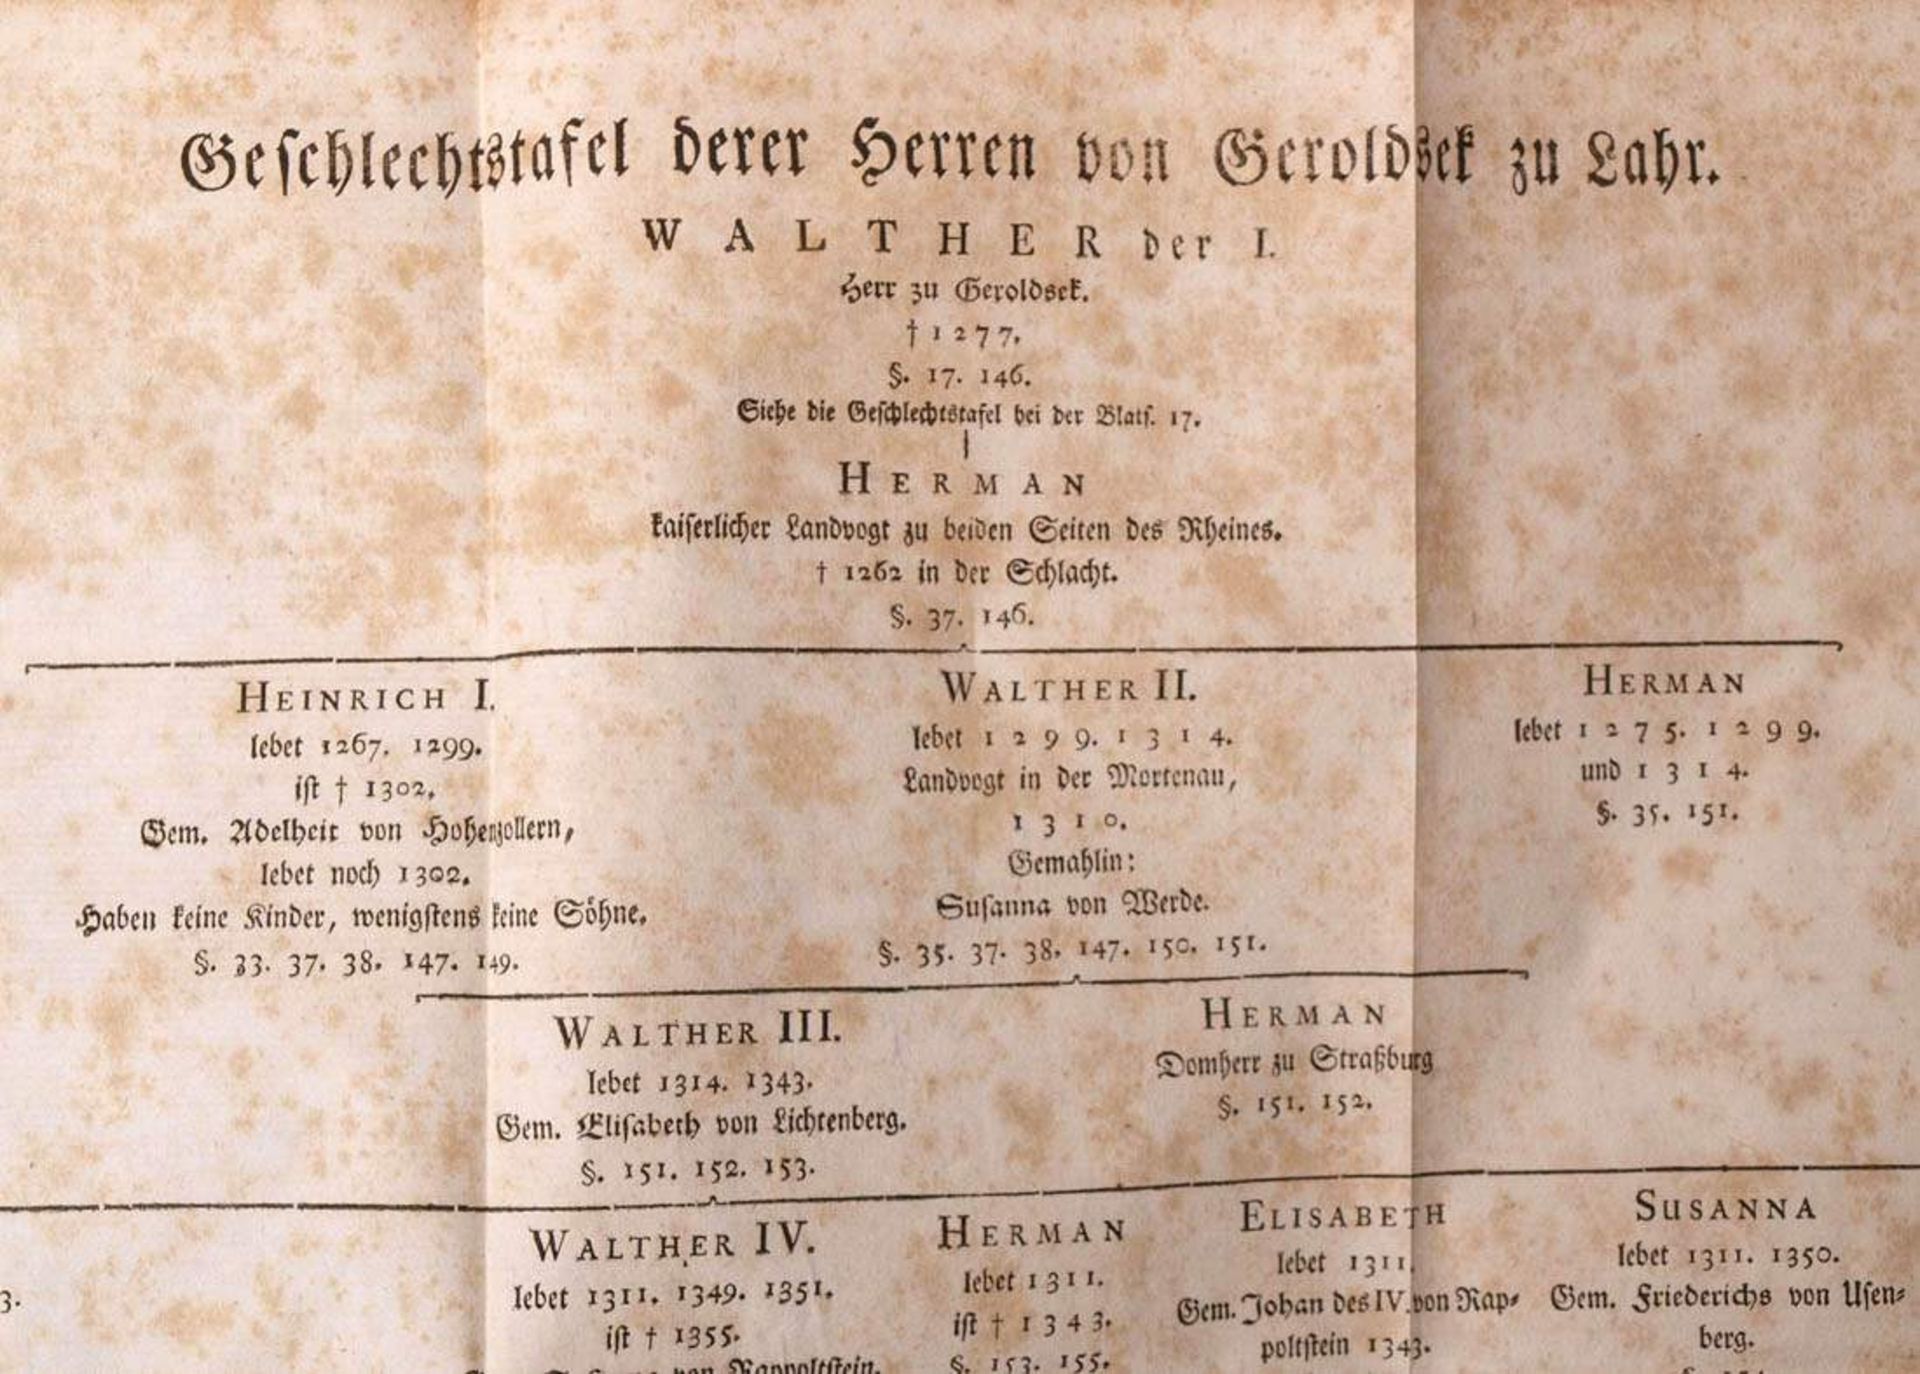 Geschichte des Hauses Geroldseck, Frankfurt und Leipzig, 1766Mit einigen Textillustrationen und - Bild 11 aus 13